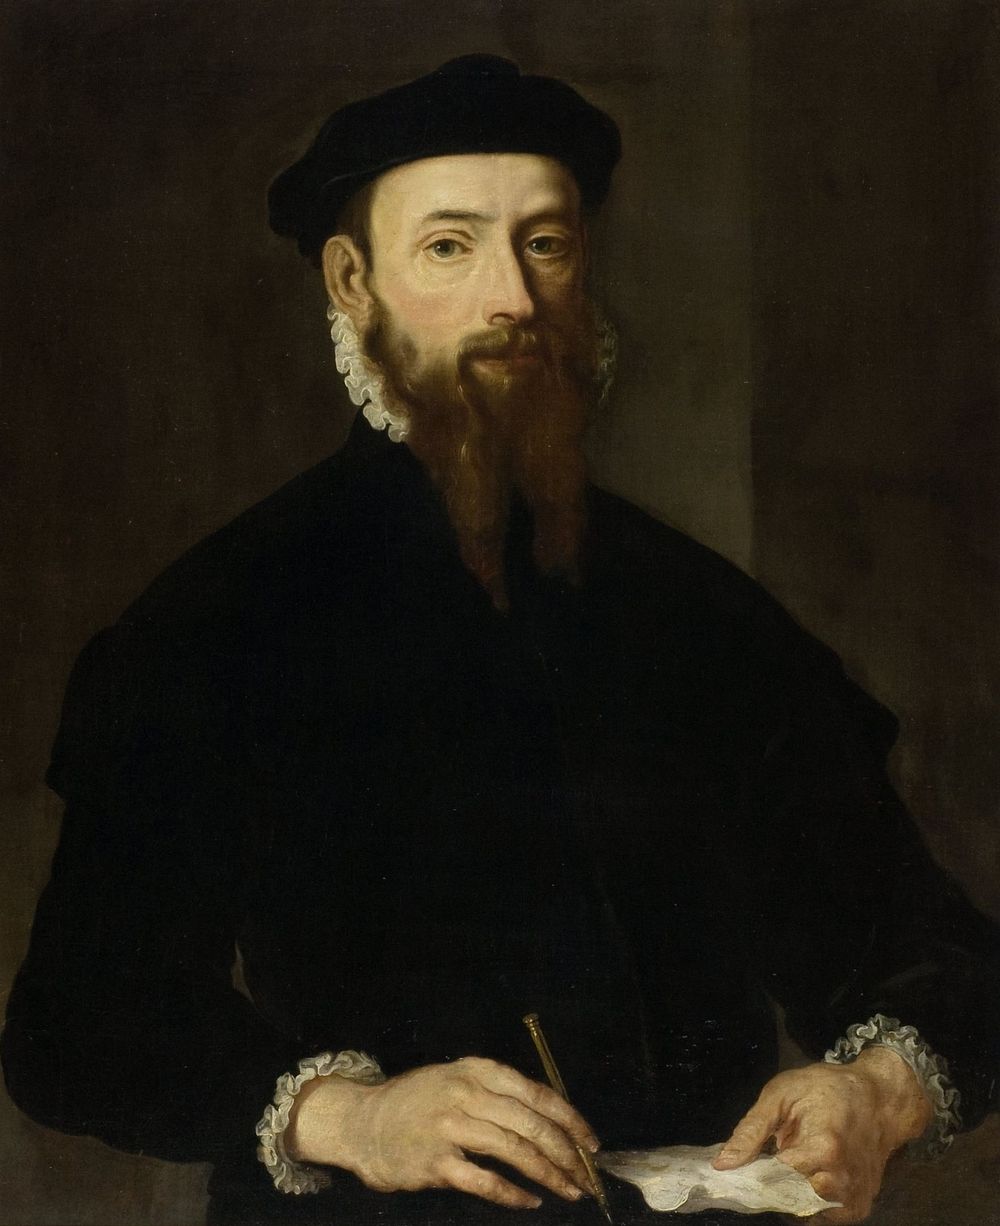 Portrait of a Man (c. 1550 - c. 1560) by anonymous and Maarten van Heemskerck